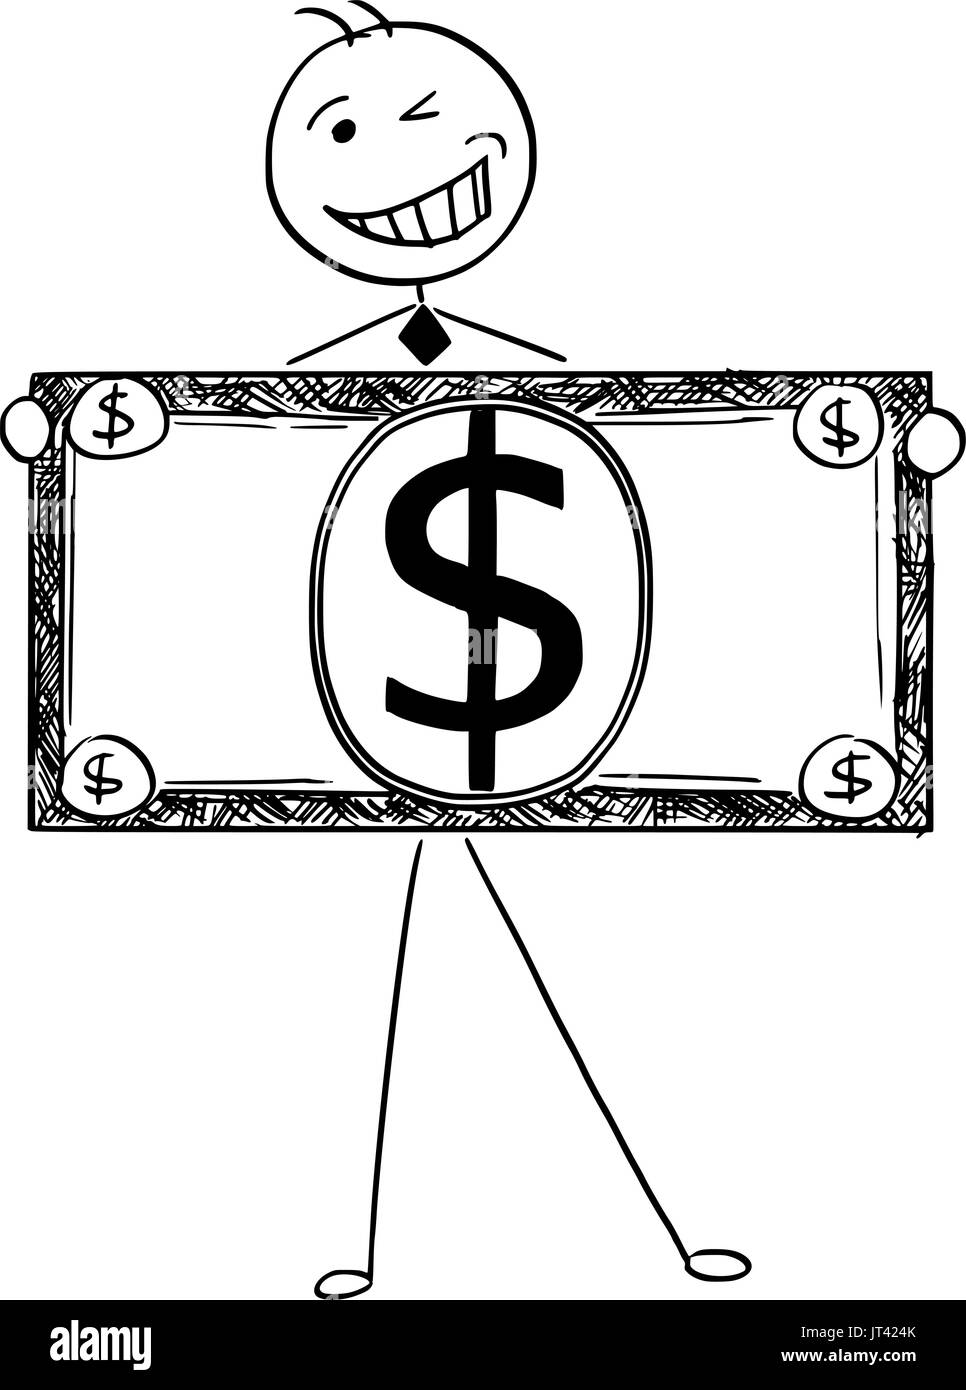 Comic-Illustration der glücklich lächelnd Stick Mann Geschäftsmann, Manager, Angestellte oder Politiker posiert mit großen Dollarschein oder banknote Stock Vektor